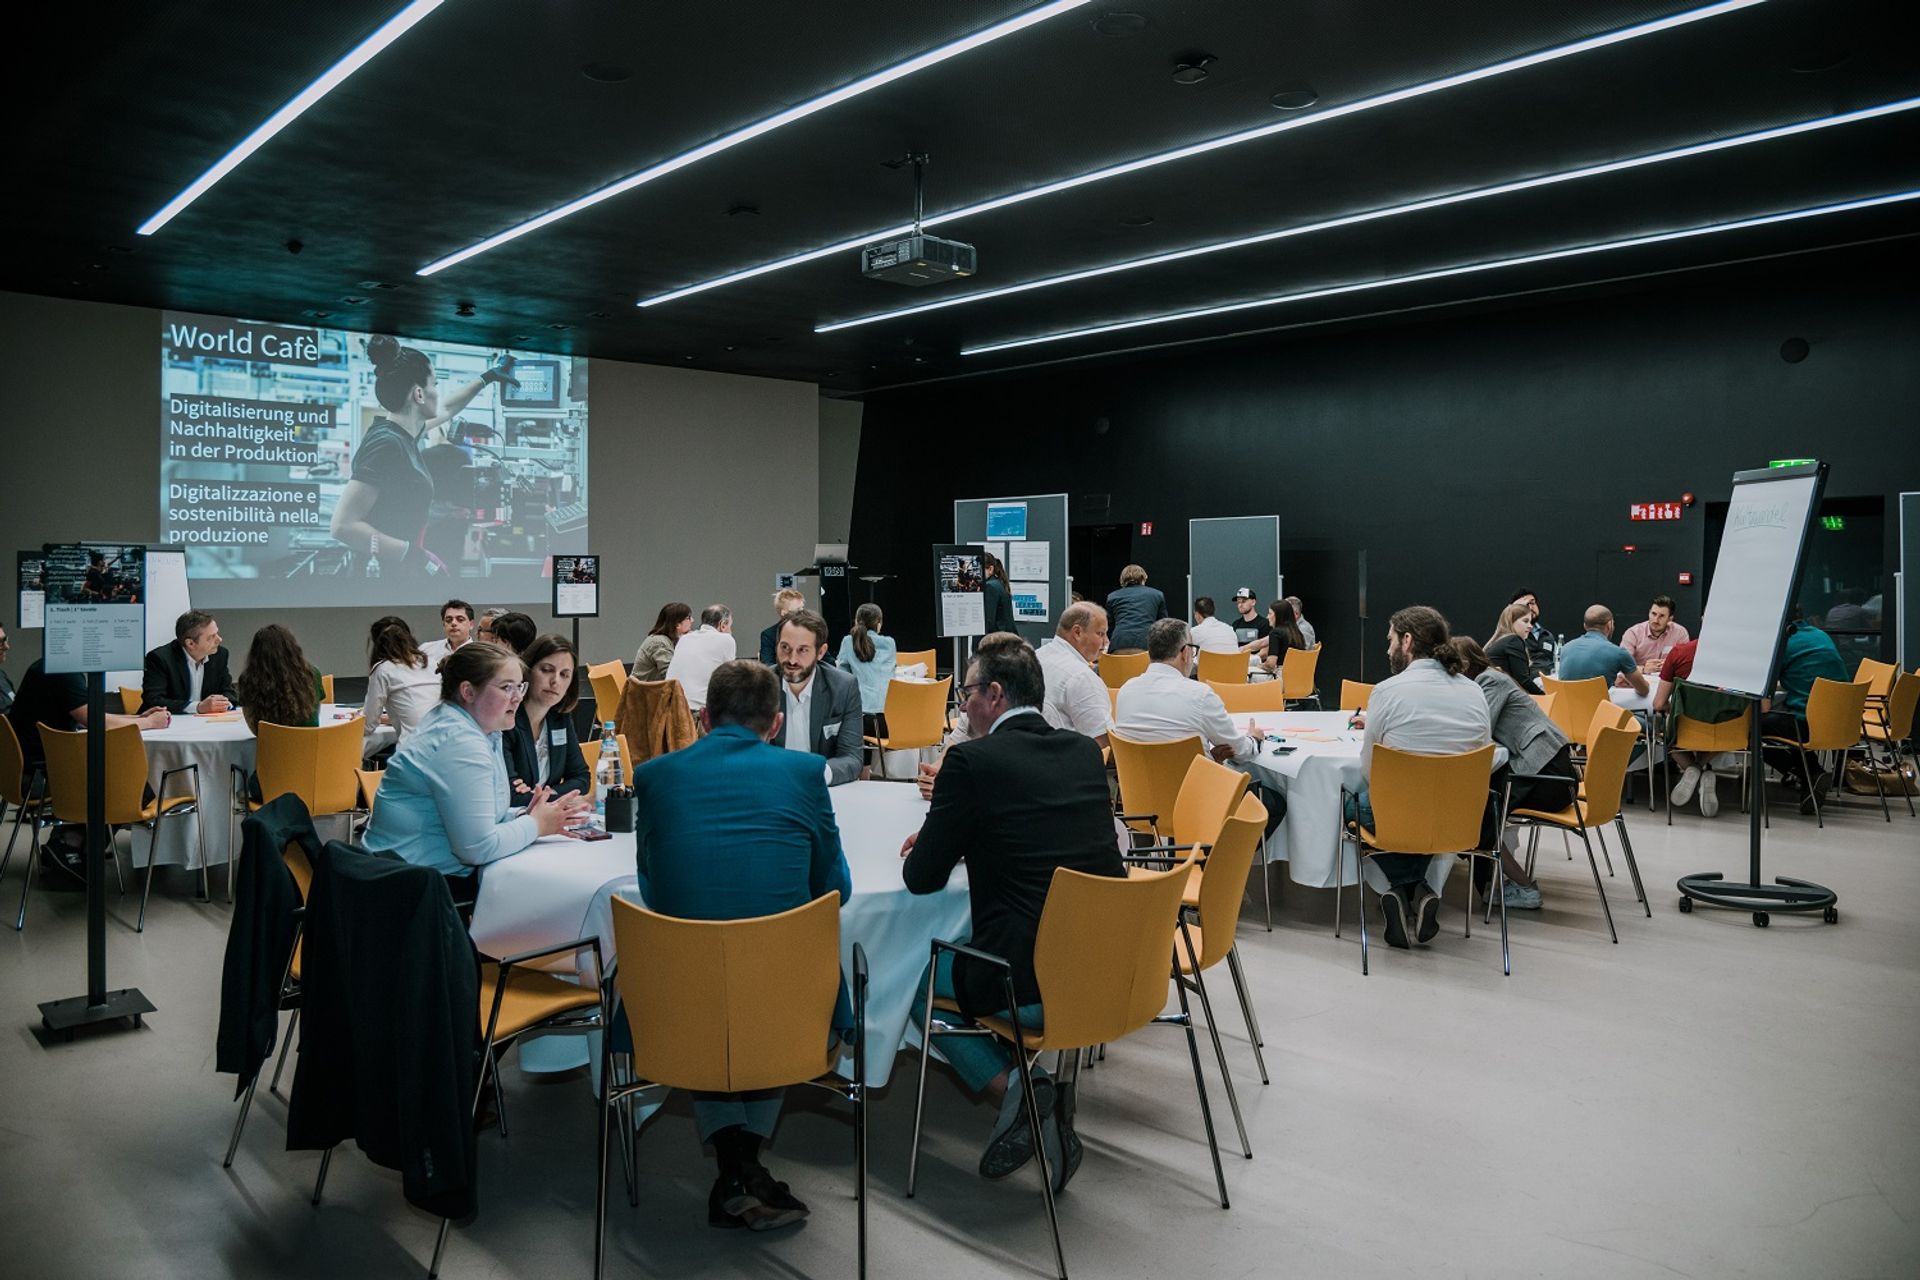 La serata di incontri dedicata al trasferimento tecnologico nei settori della trasformazione digitale e della sostenibilità organizzata presso il NOI Techpark di Bolzano